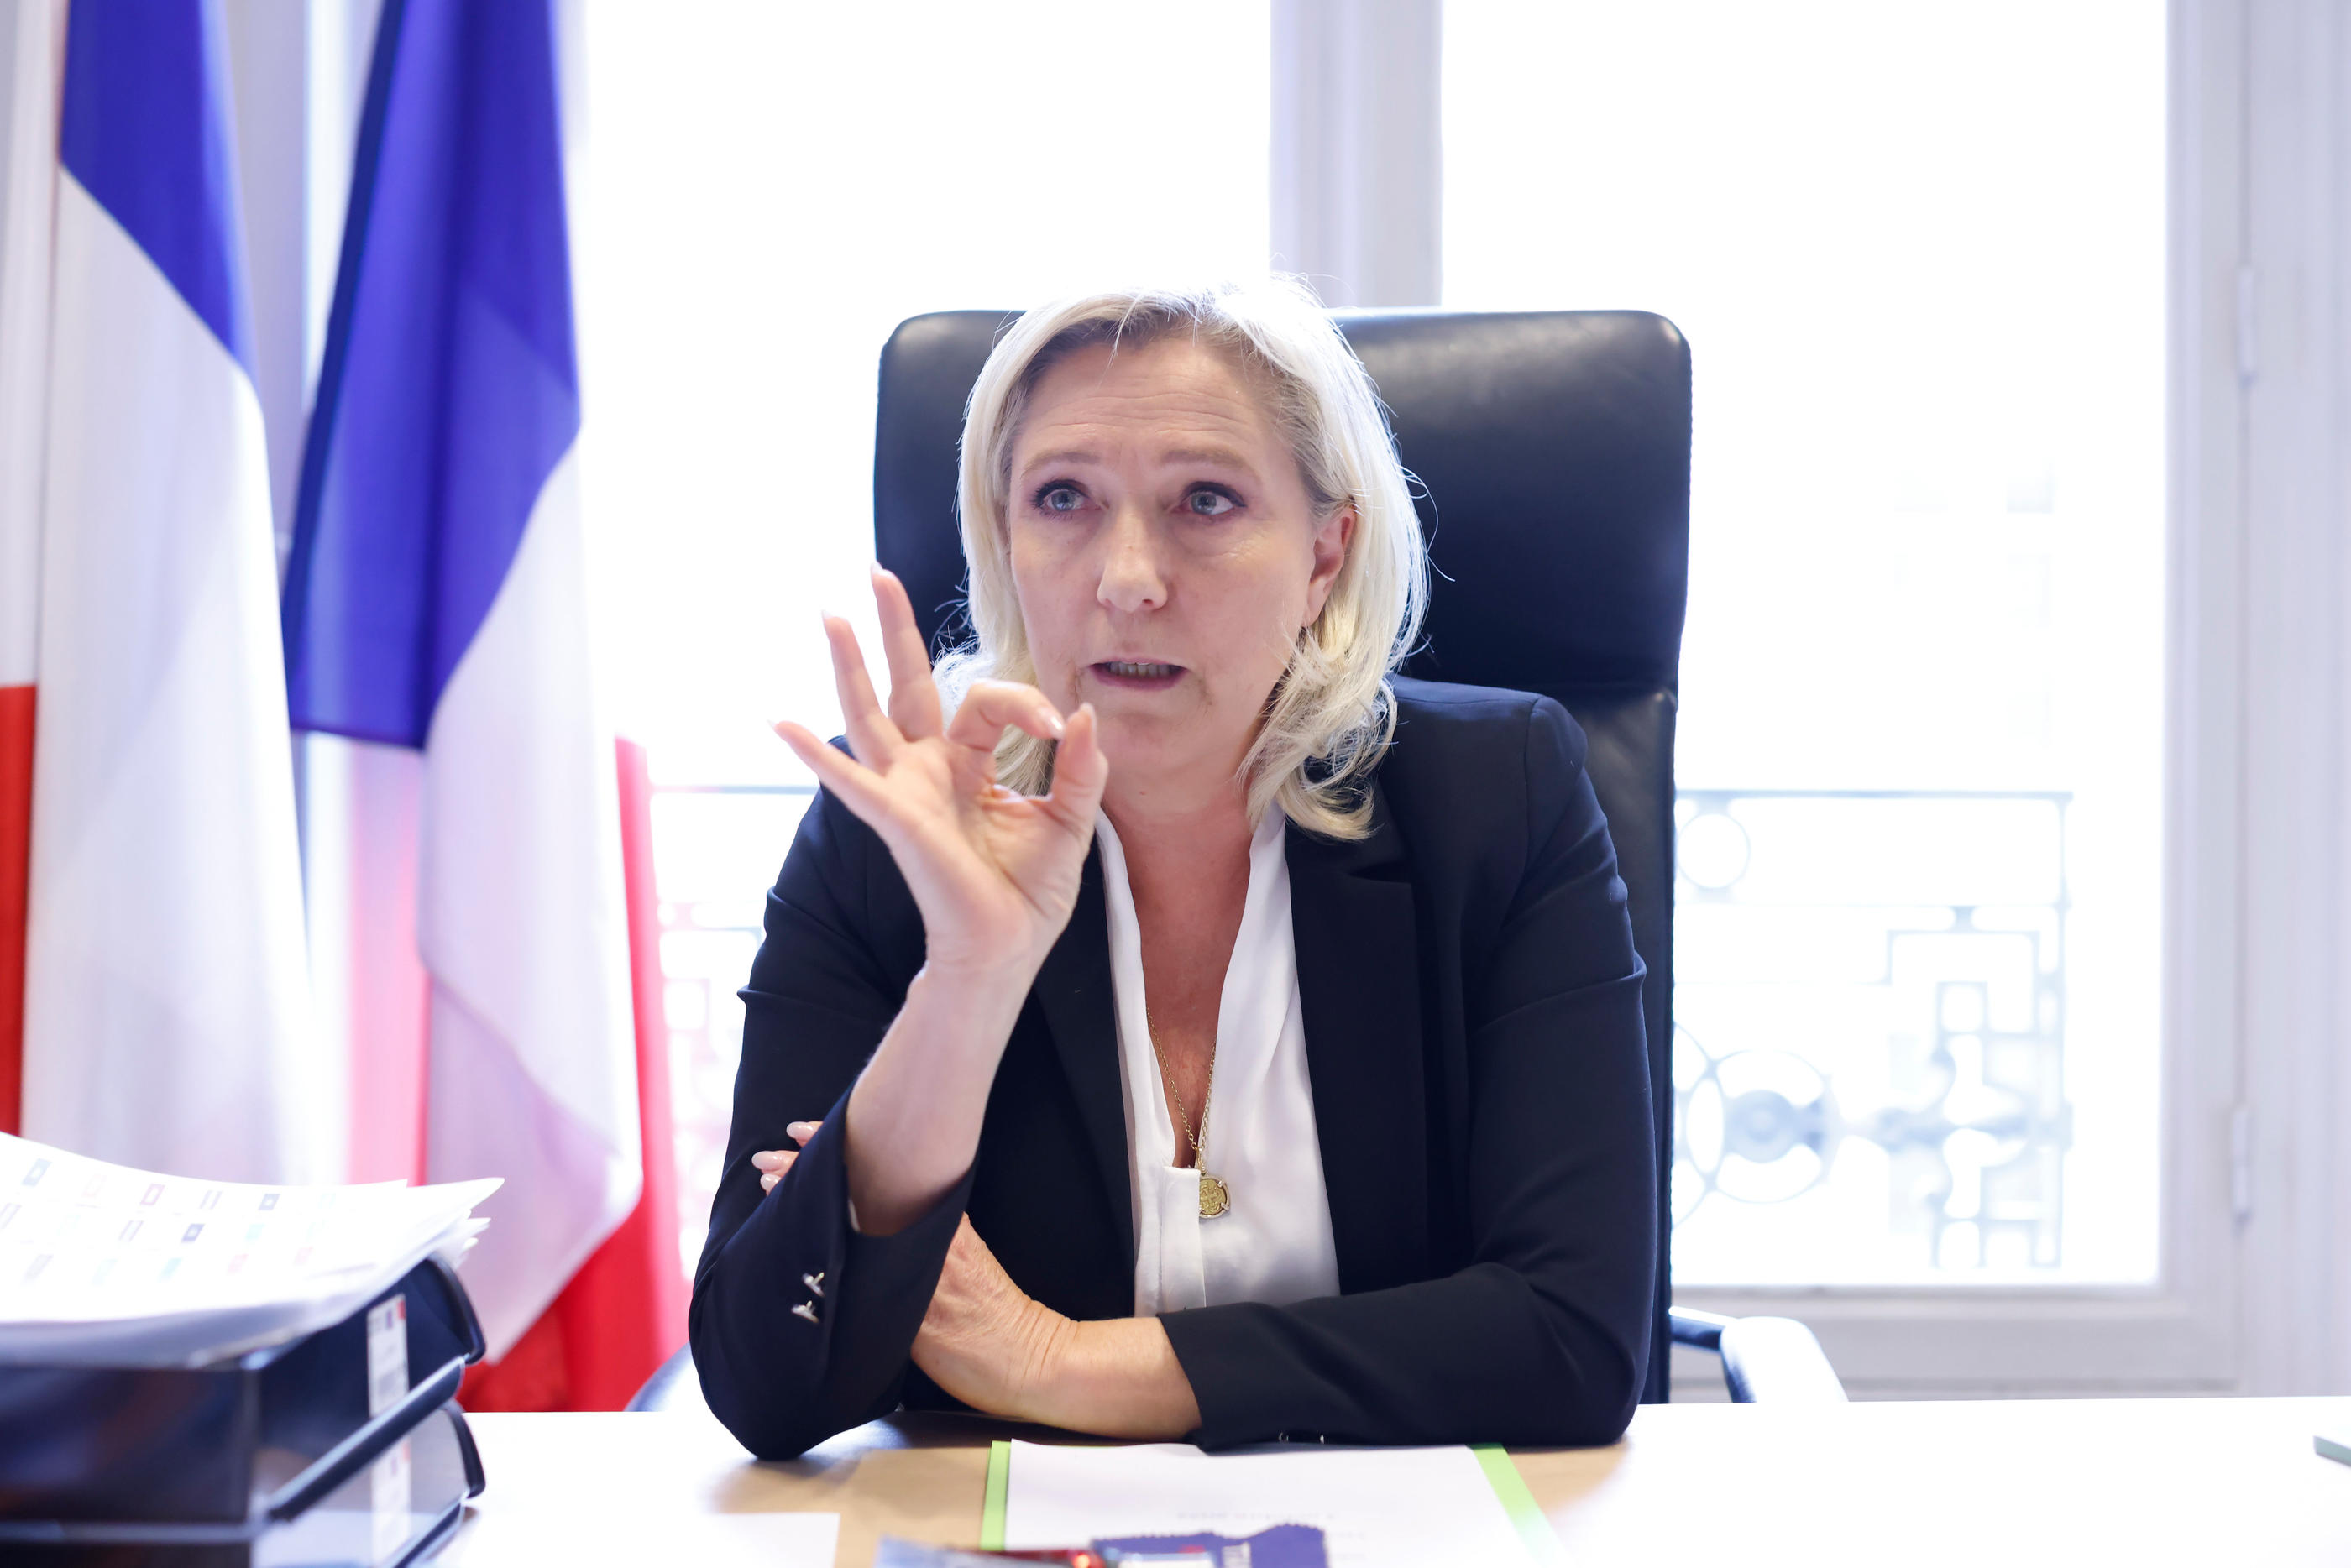 Opposée à la démarche de consultation lancée ce lundi auprès des Français sur la refondation, Marine Le Pen réaffirme que « le lieu pour trancher les débats en démocratie s'appelle l'Assemblée nationale ». LP/Olivier Corsan